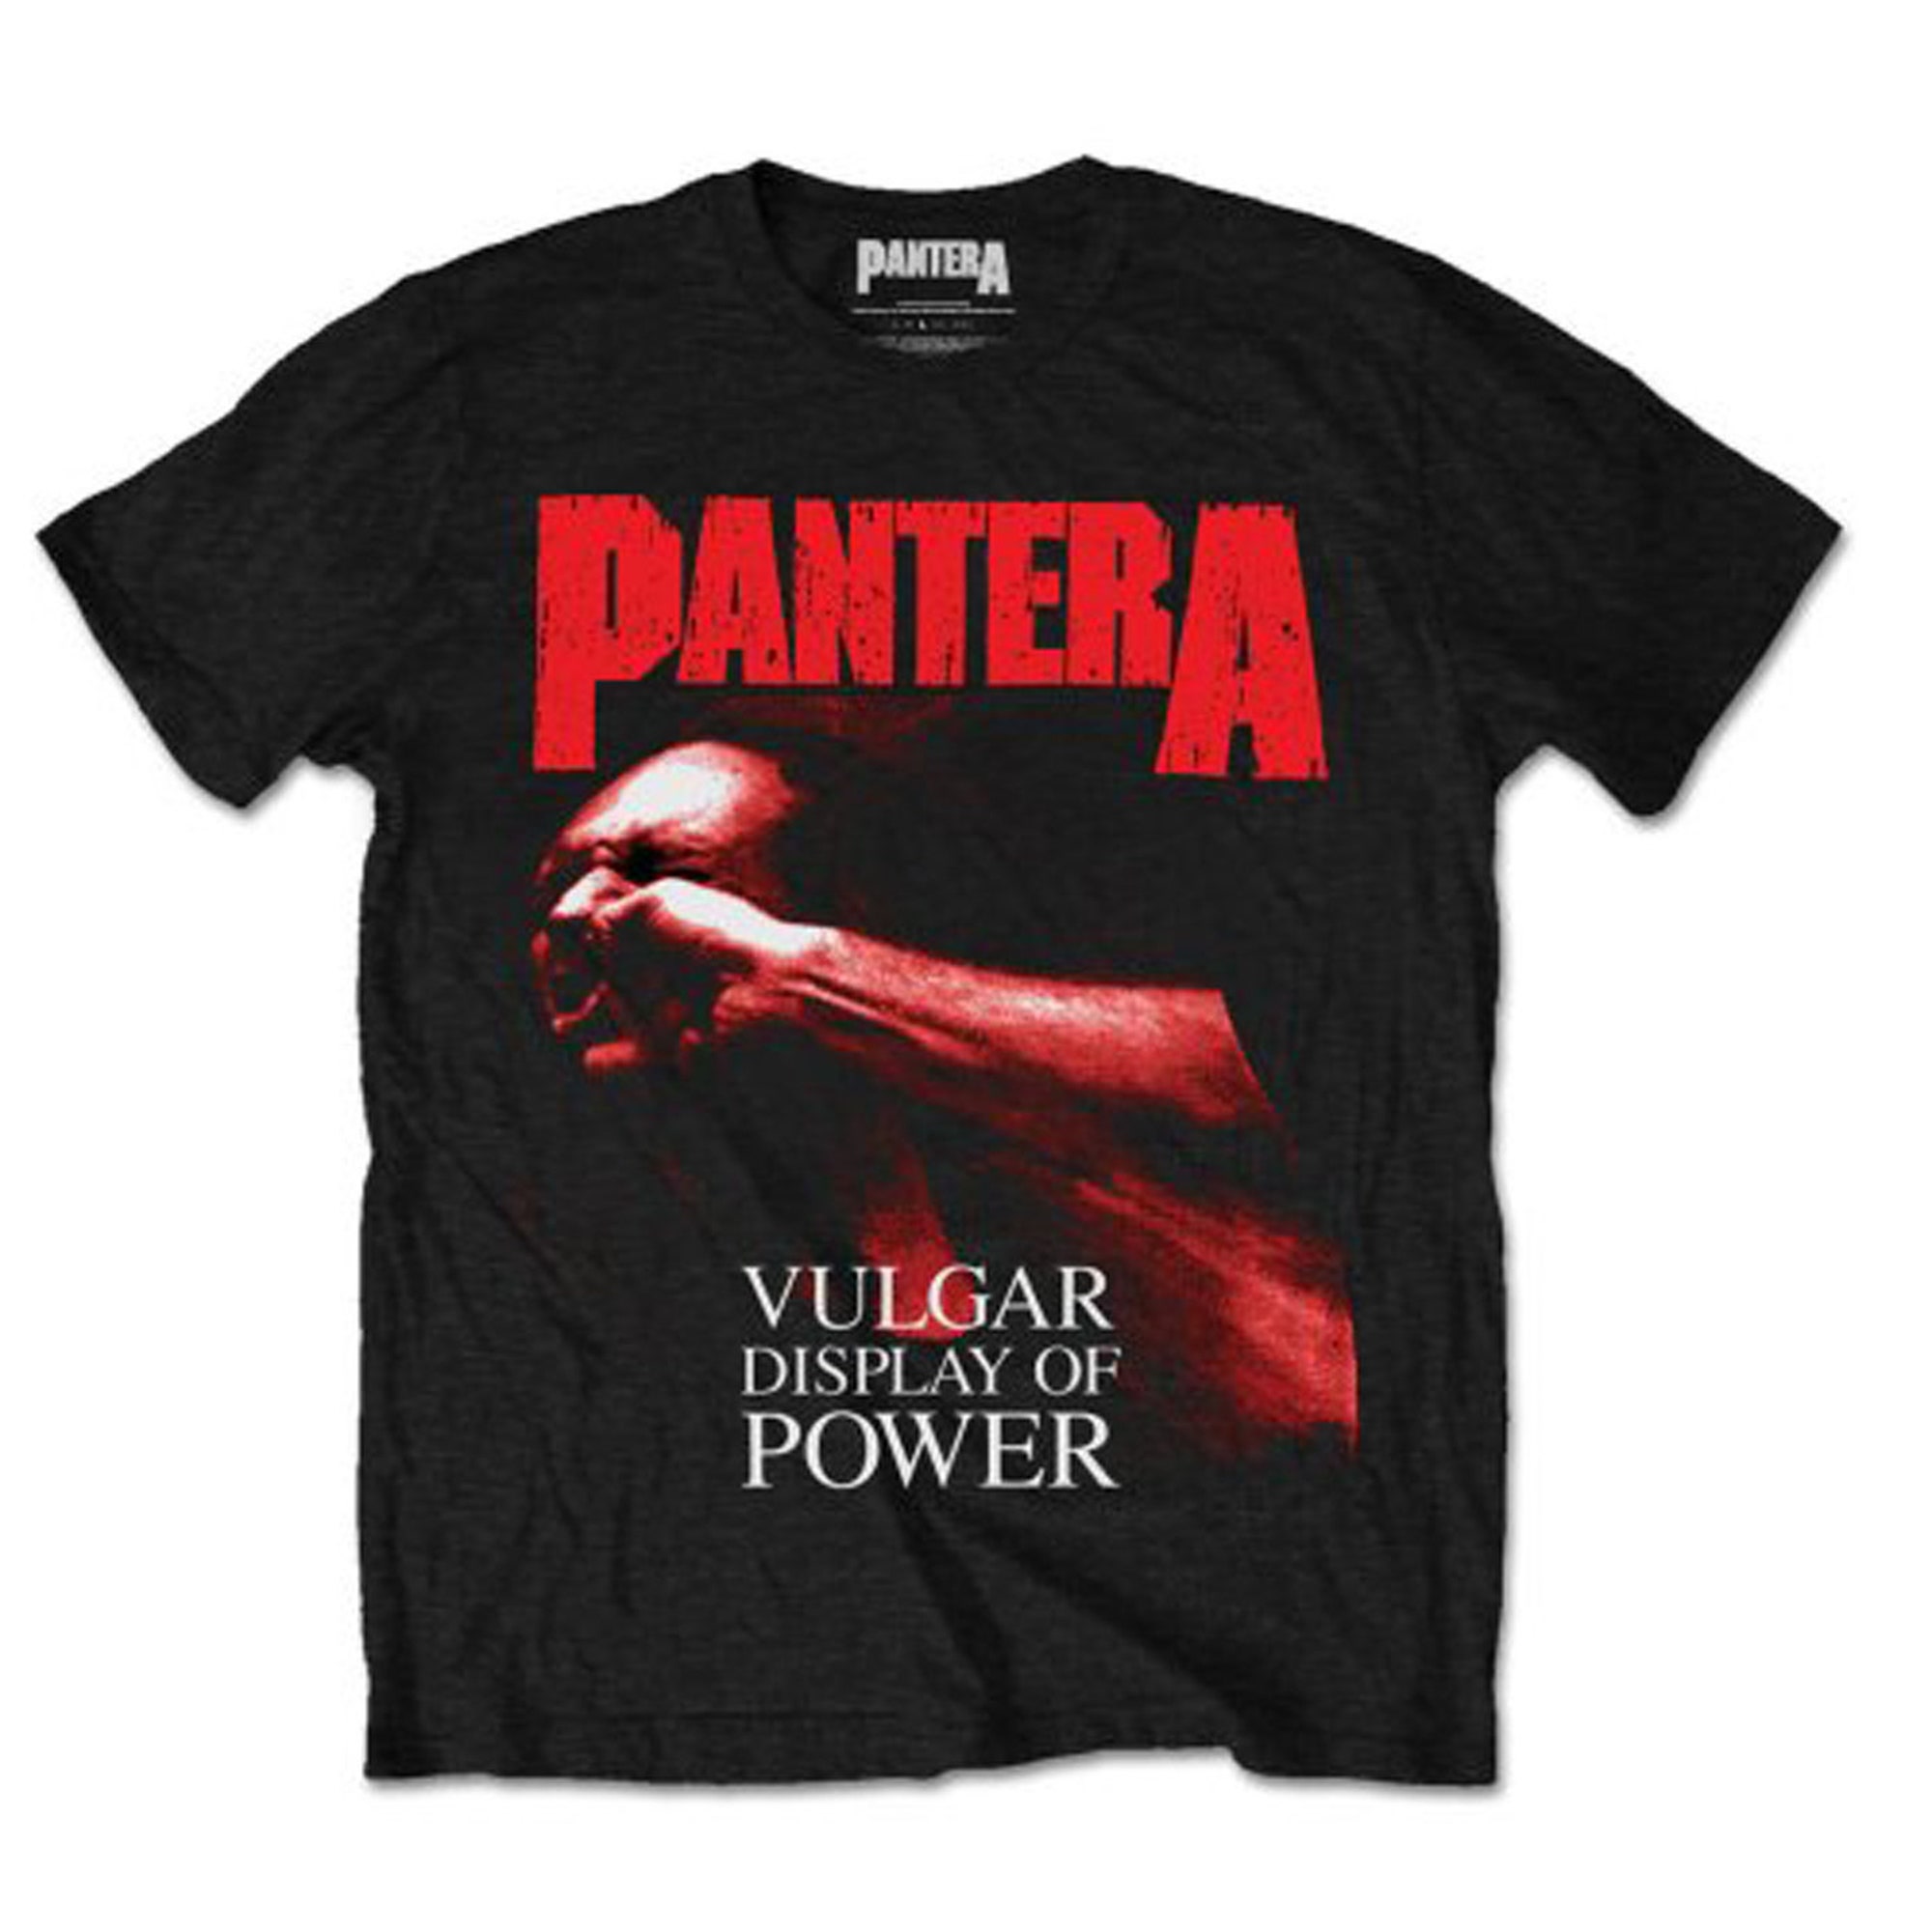 Discover Mayhem Skull Vulgar Display of Power Thrash Metal Official T shirt